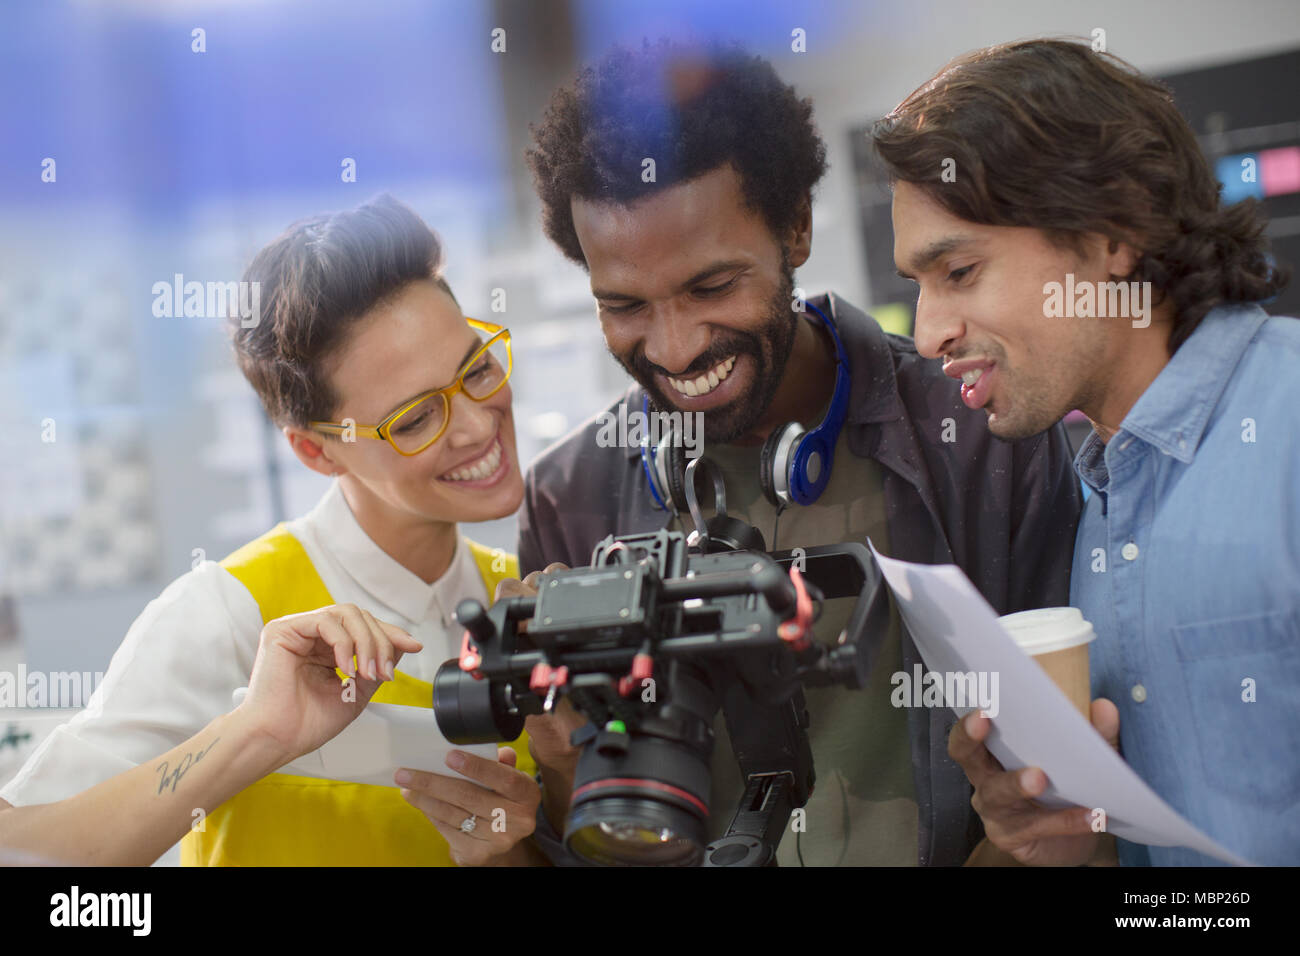 Les journalistes et cameraman sourire à l'aide d'un appareil photo numérique Banque D'Images